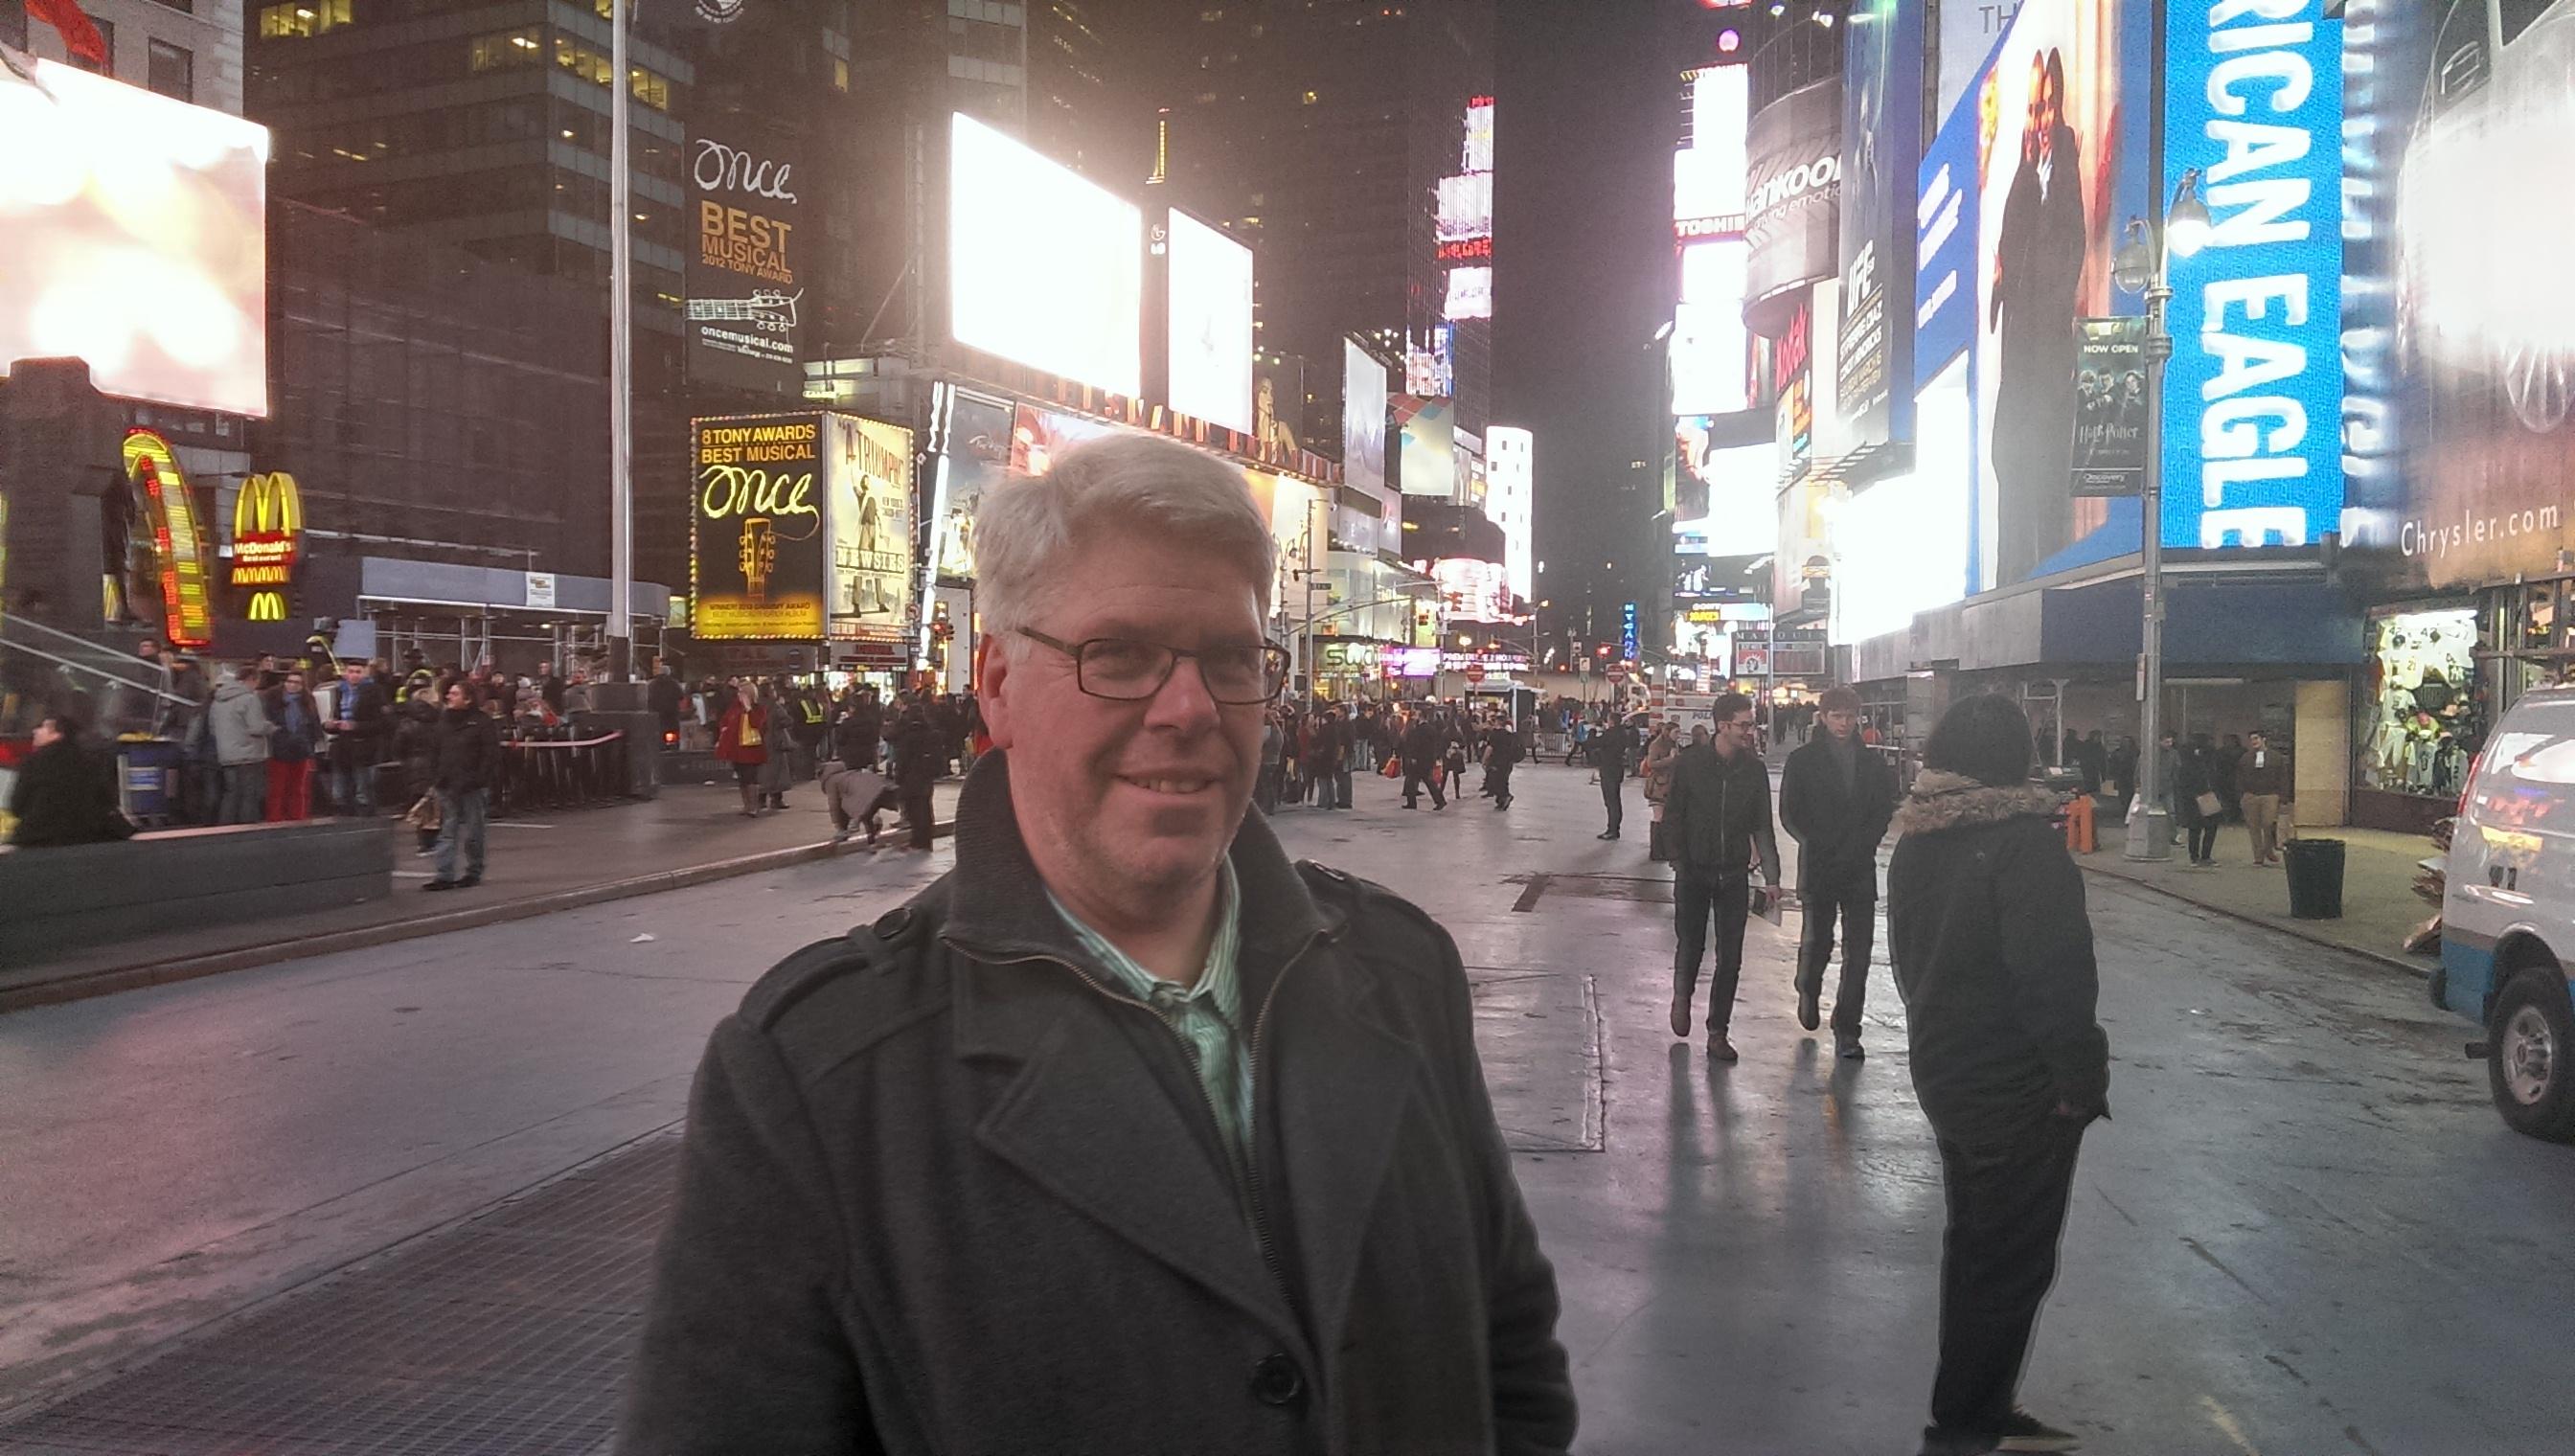 Vi tok bilder med HTC One under svært krevende forhold. Her fra Times Square i New York.Foto: Espen Irwing Swang, Amobil.no